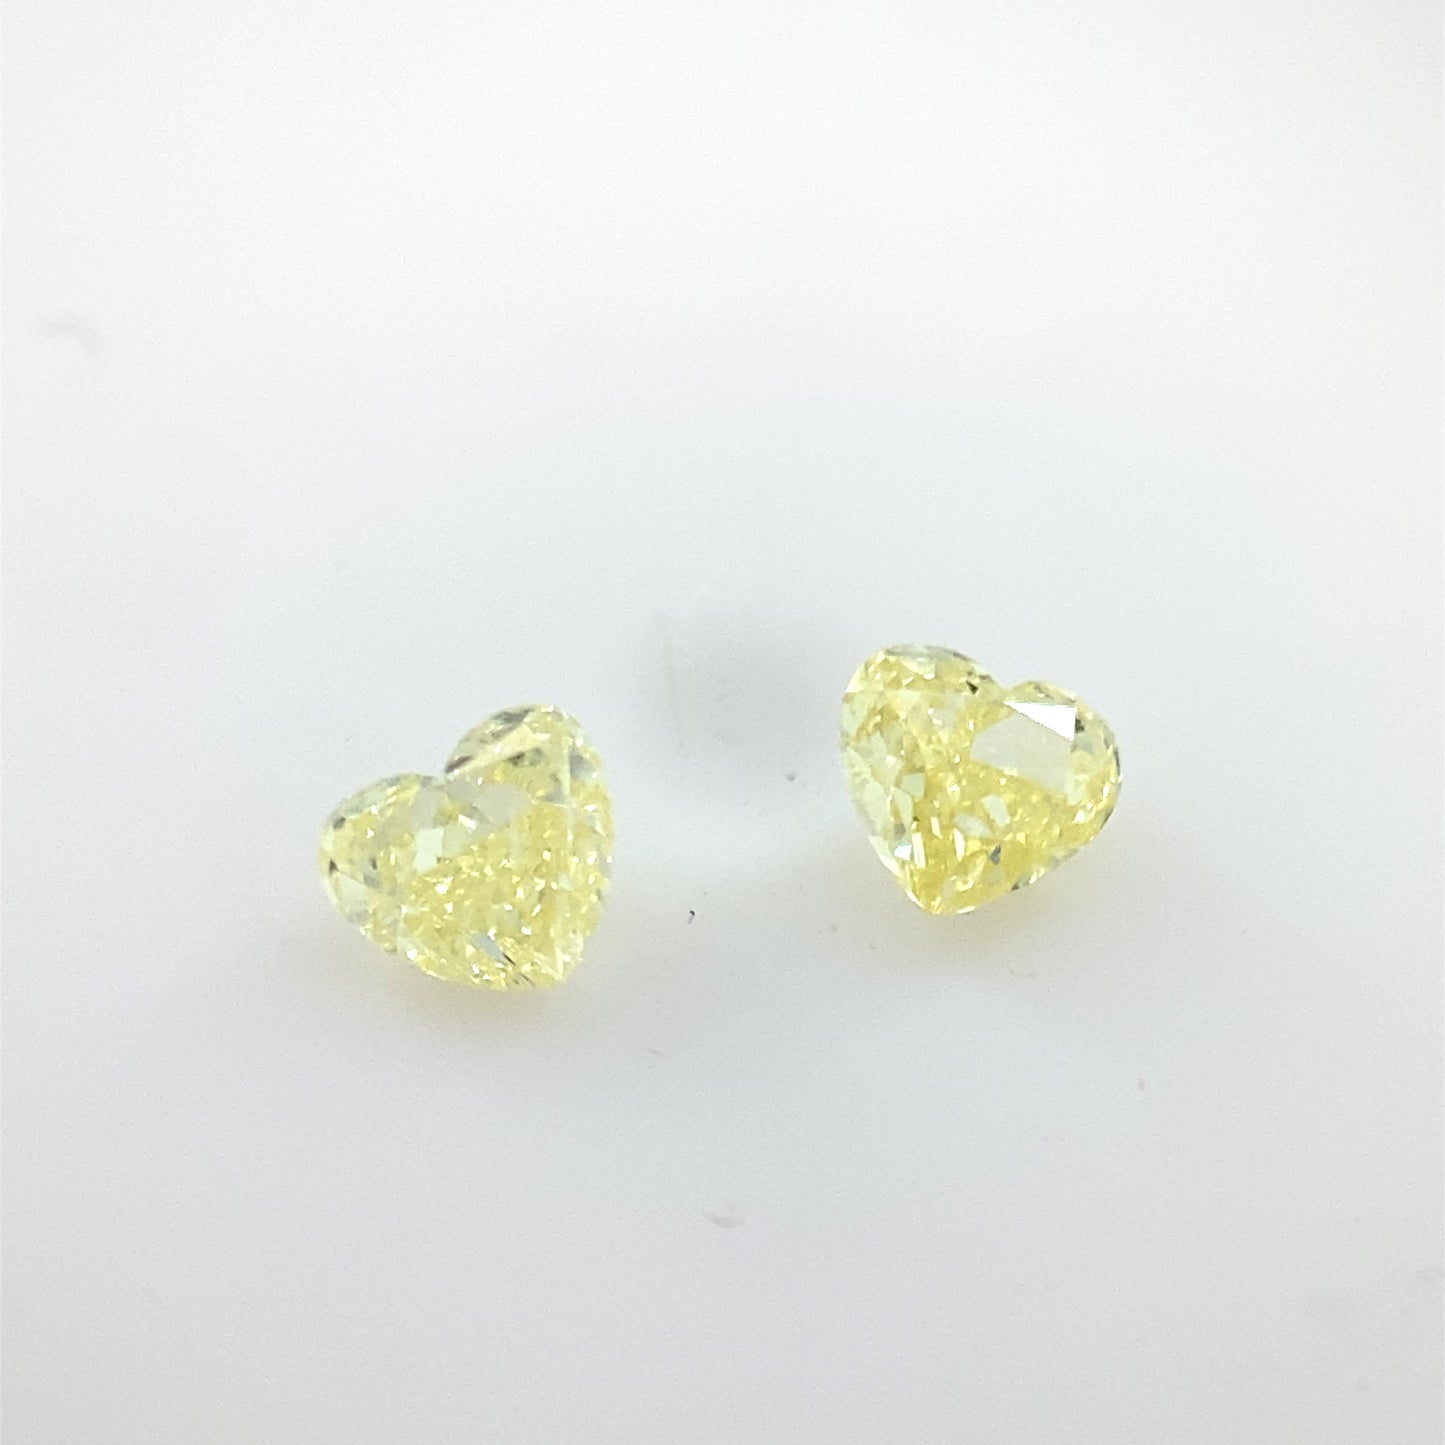 PIEDRA SUELTA / PAR de corazones de diamantes amarillos de 0.27ct / Valor total por el par 13,130 pesos